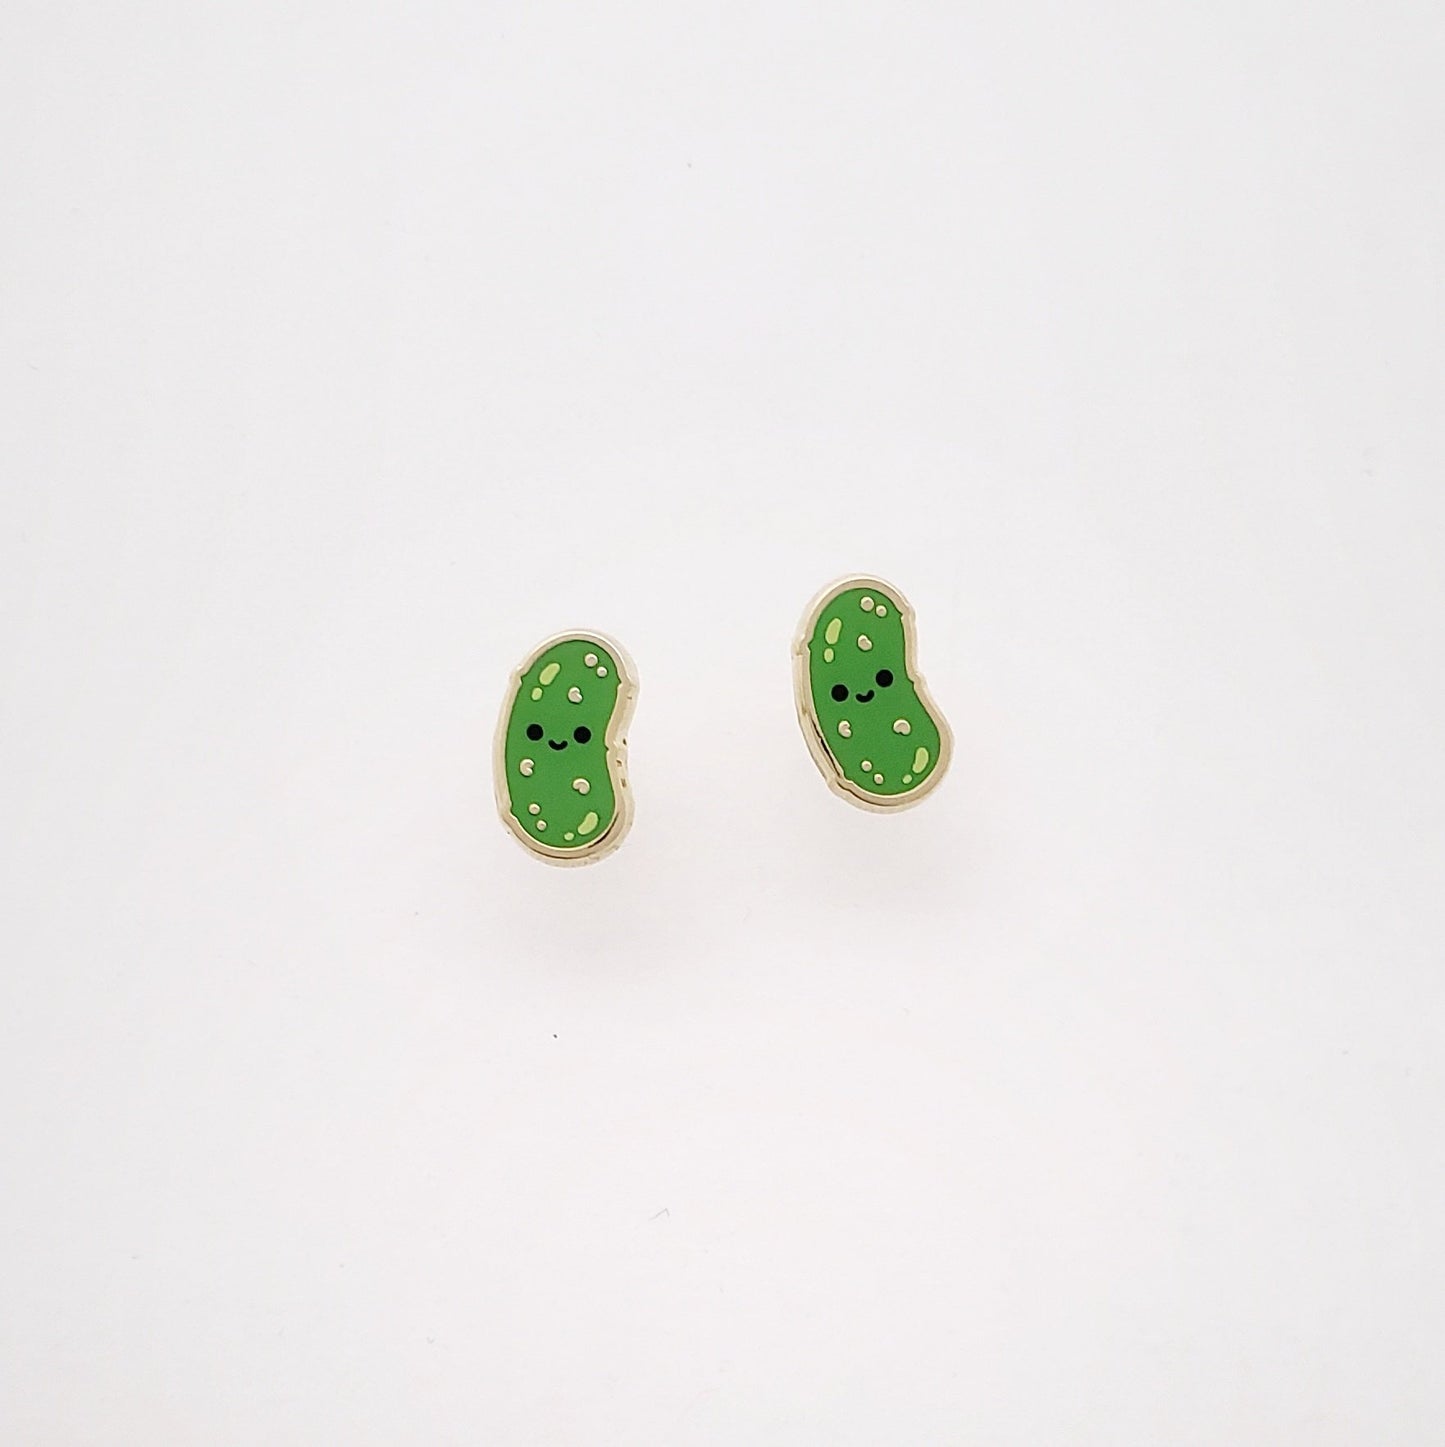 Lil Pickle earrings